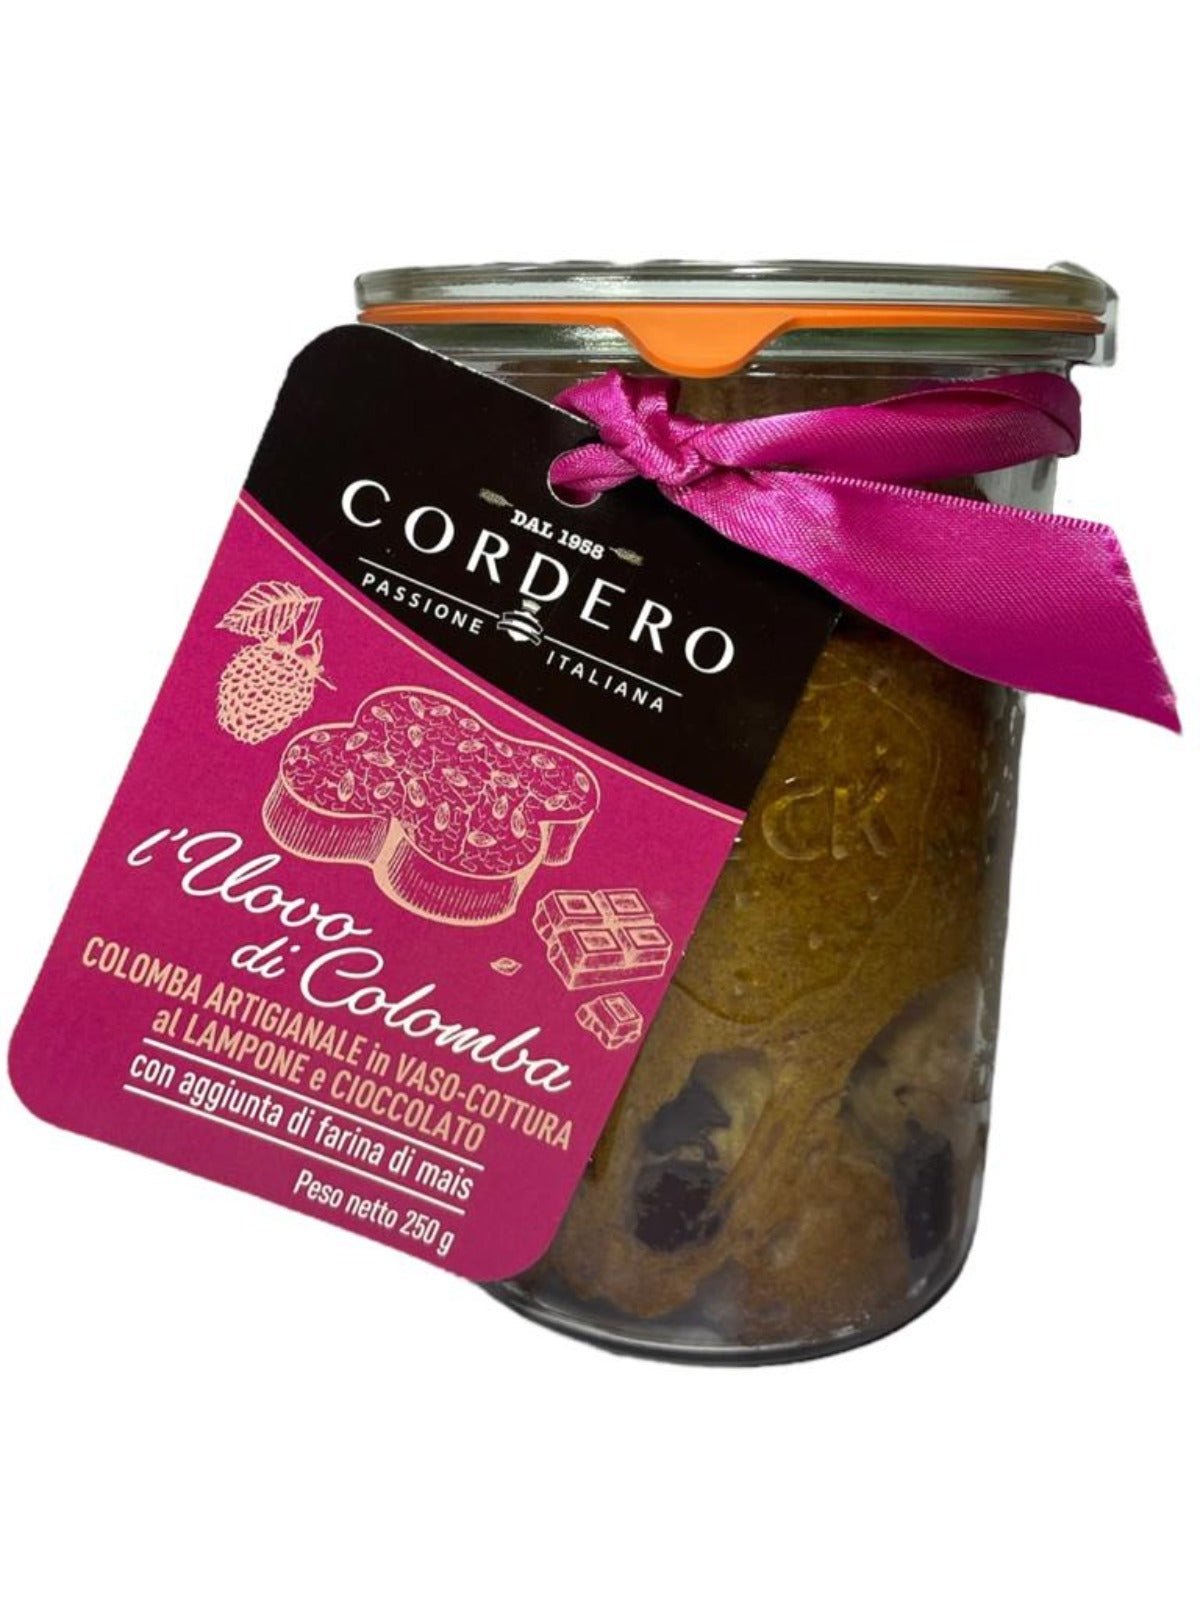 Cordero Colomba Lampone e Cioccolato Italian Cake with Raspberry and Chocolate 250g